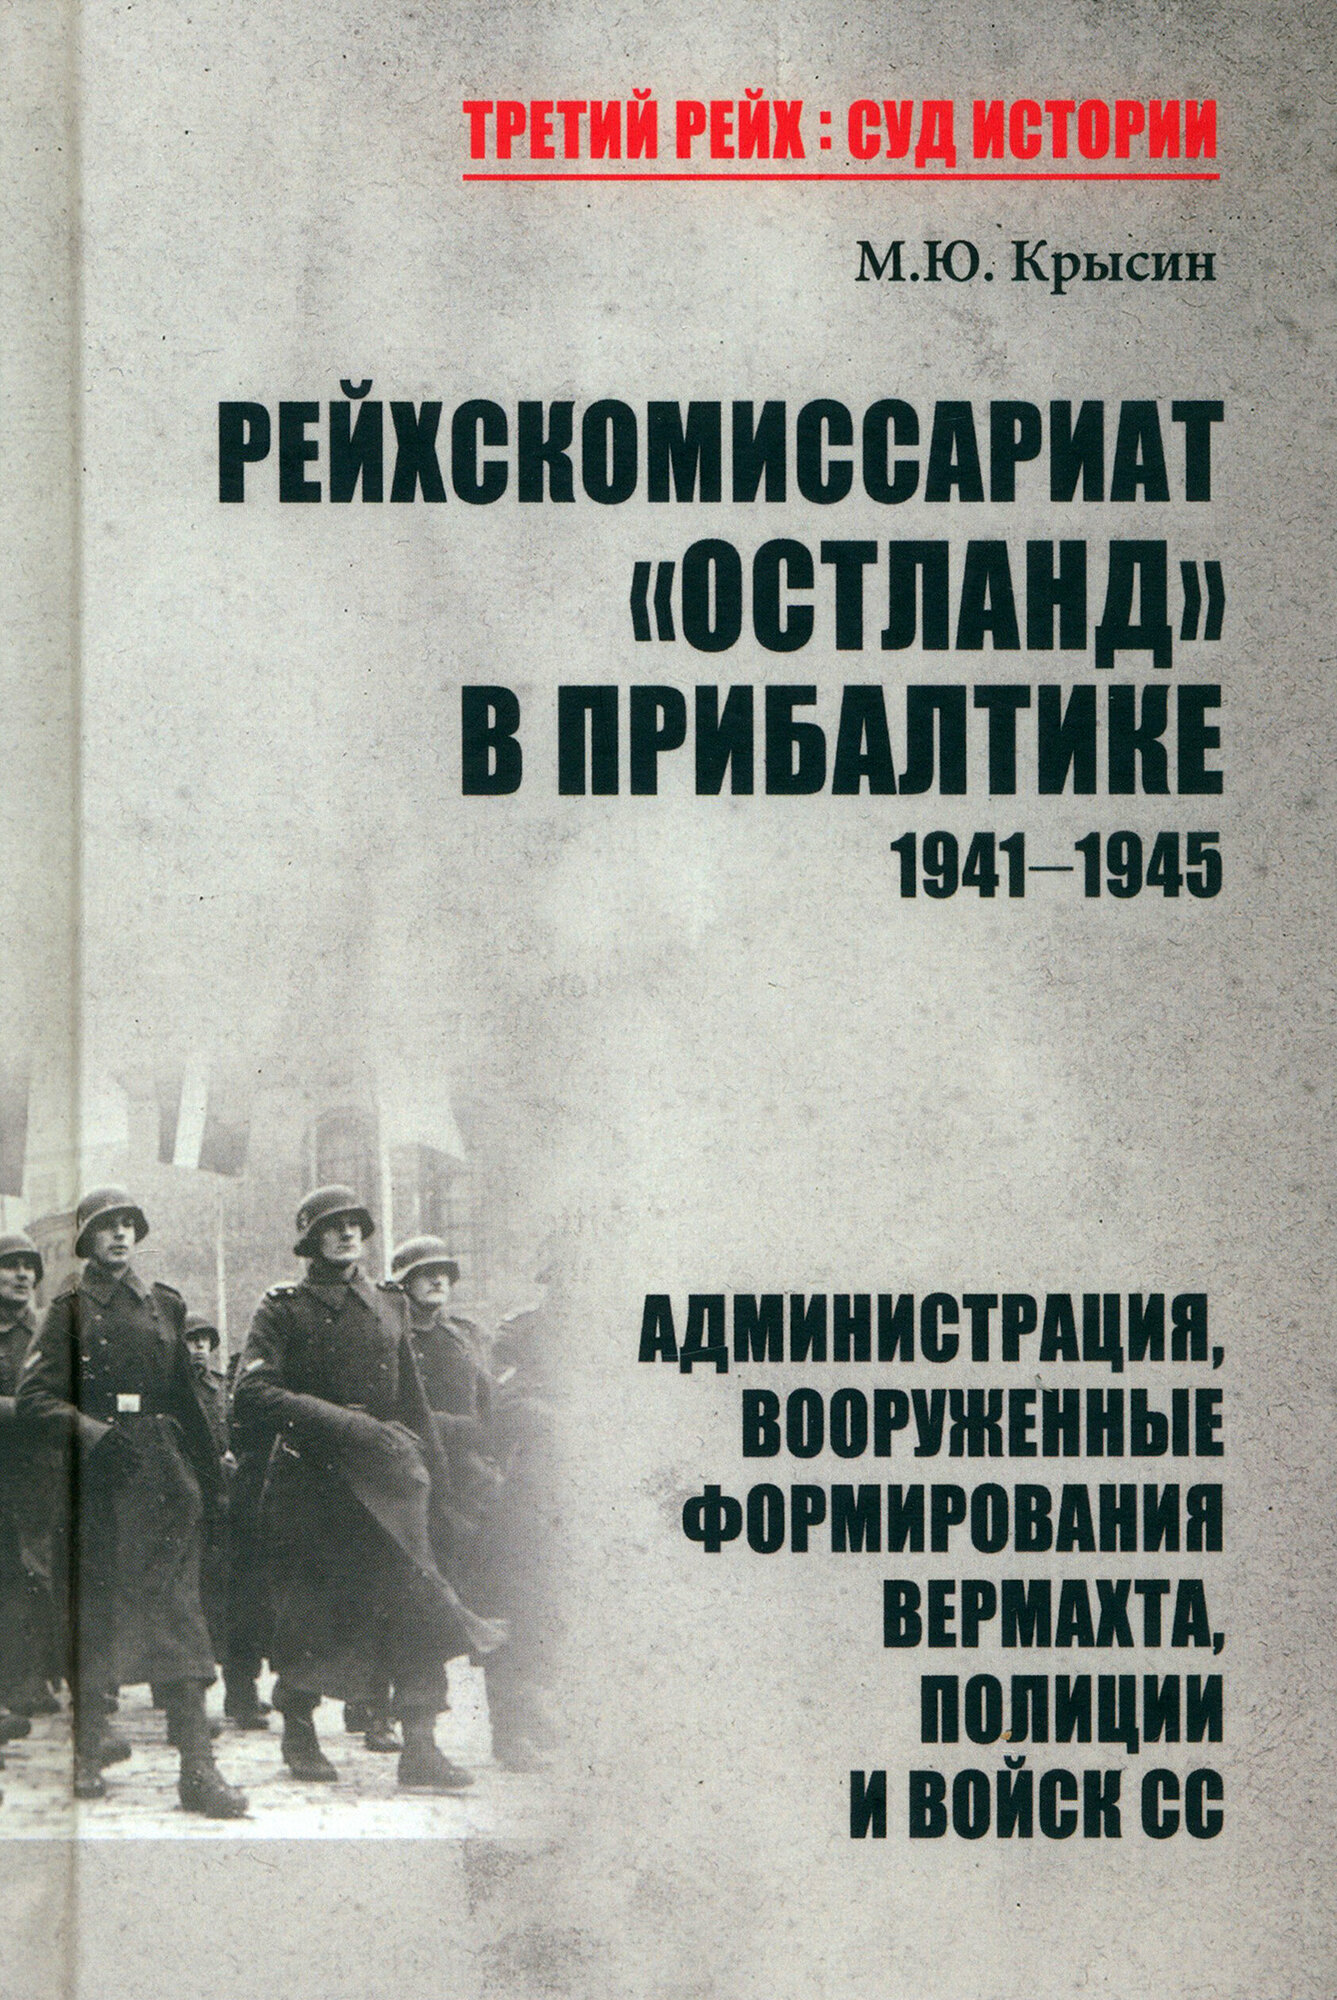 Рейхскомиссариат "Остланд" в Прибалтике 1941-1945. Администрация, вооруженные формирования вермахта - фото №2